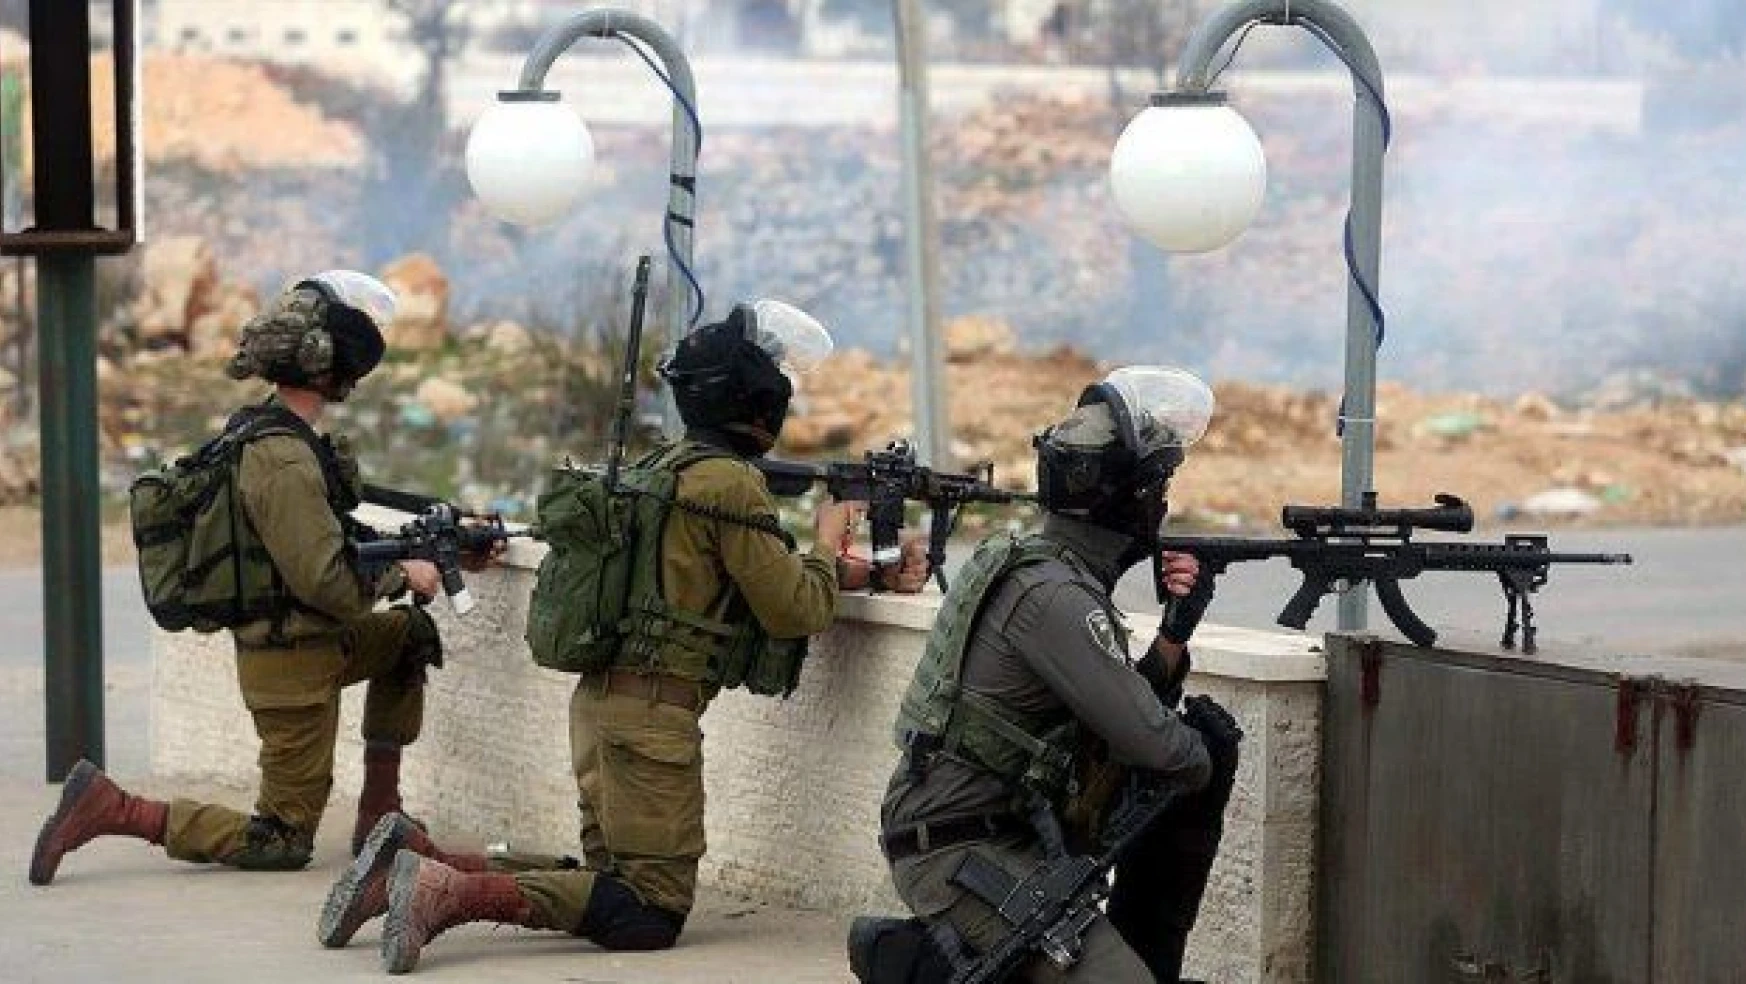 İsrail'in yeni güvenlik stratejisi: Yargısız infaz